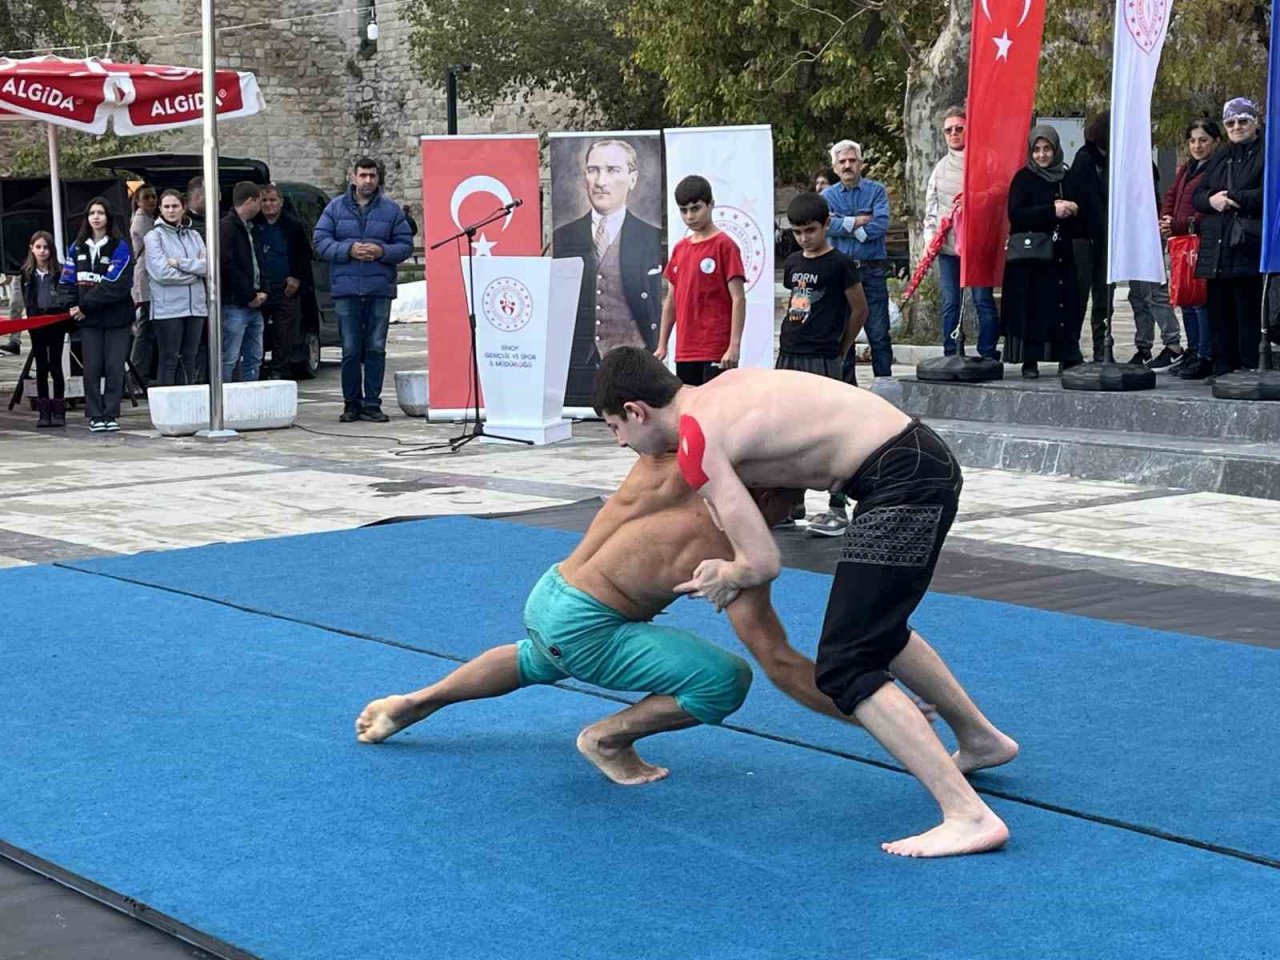 Amatör Spor Haftası Sinop’ta törenle başladı